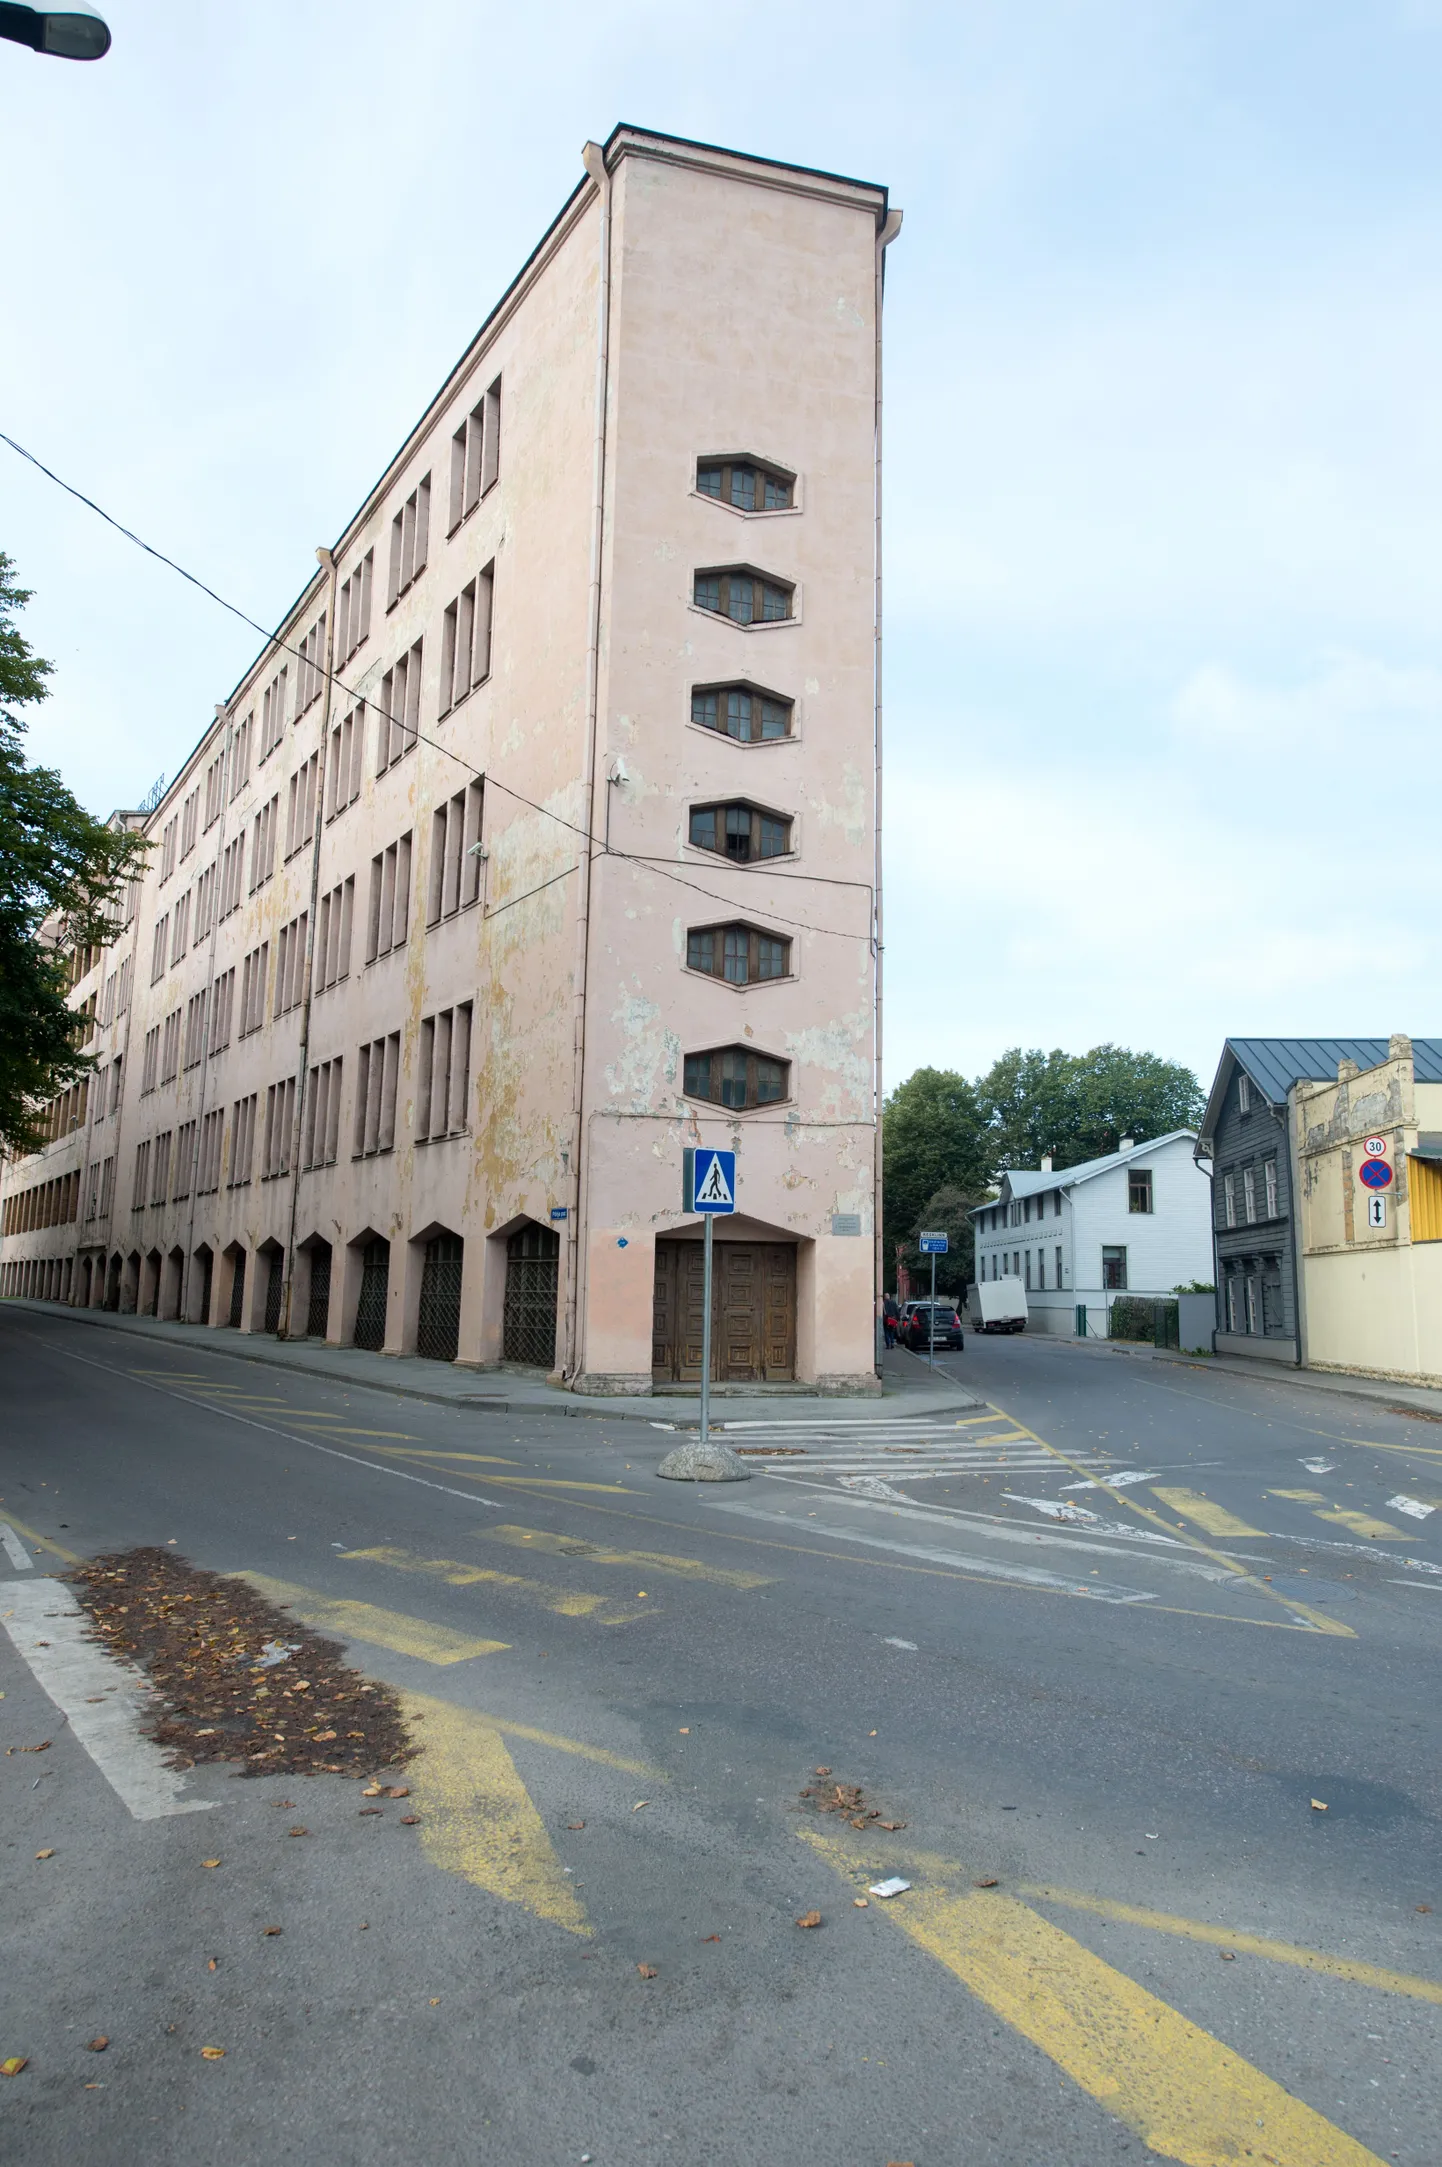 Suva sukavabriku tootmishoone Kalamajas, mis saab tulevikus Eesti Kunstiakadeemia uueks koduks.